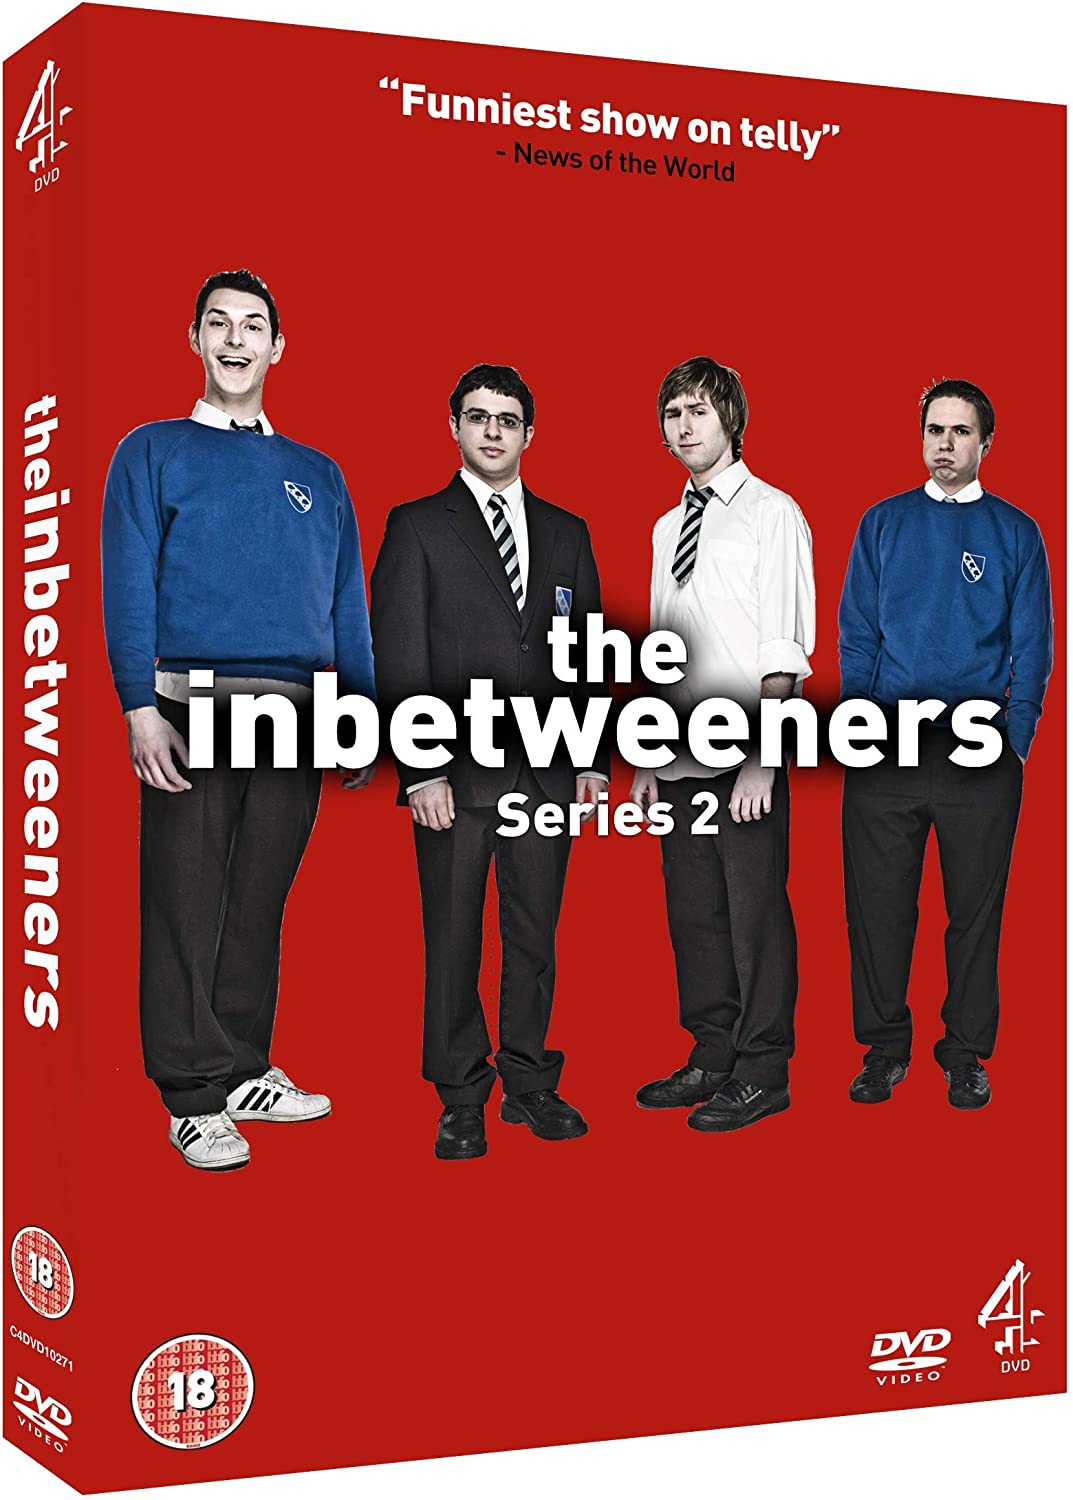 The Inbetweeners: Series 2 [DVD]